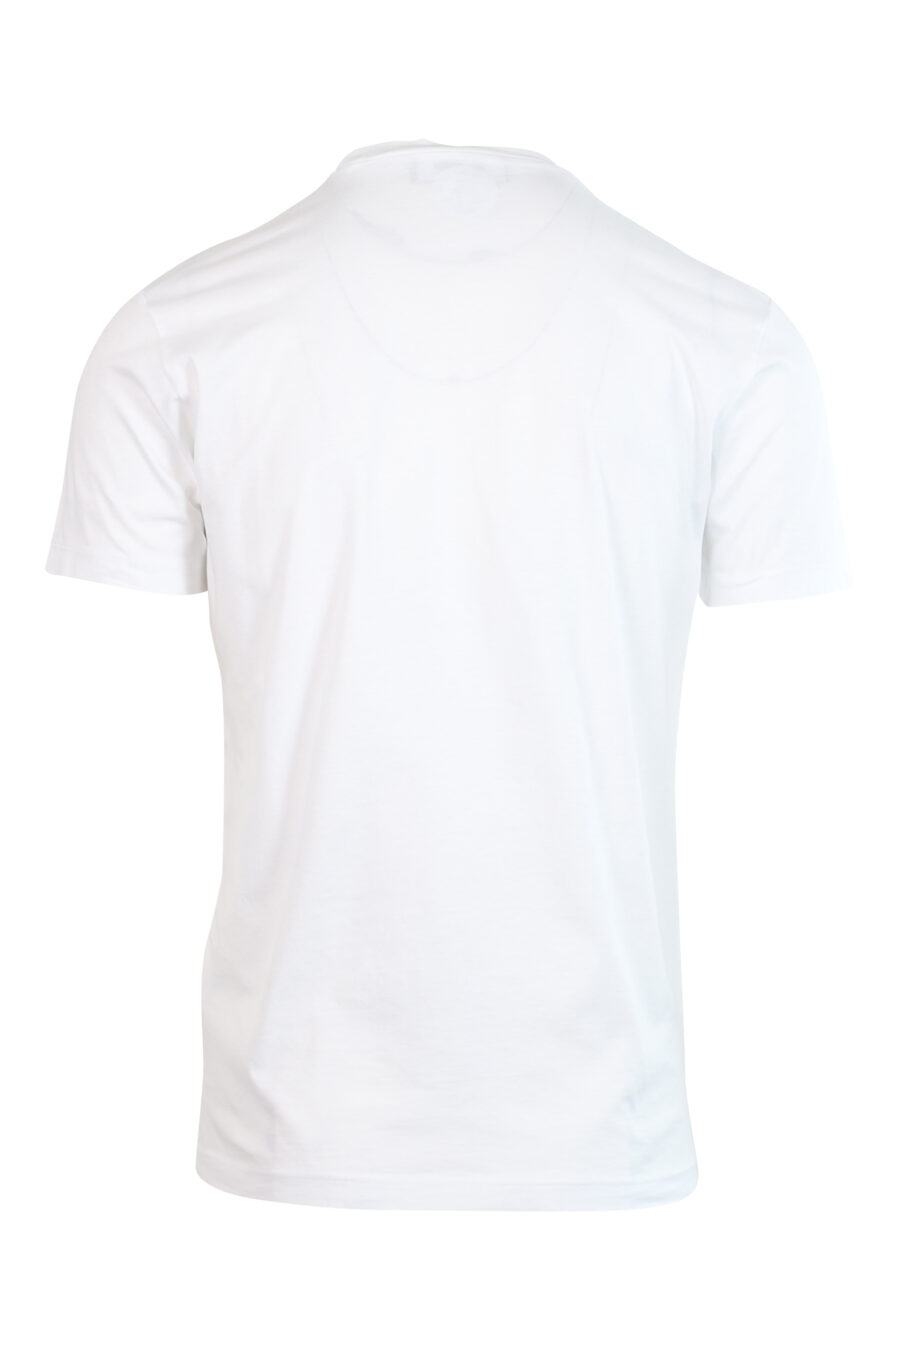 White T-shirt with vertical "icon" maxilogo - 8052134980989 2